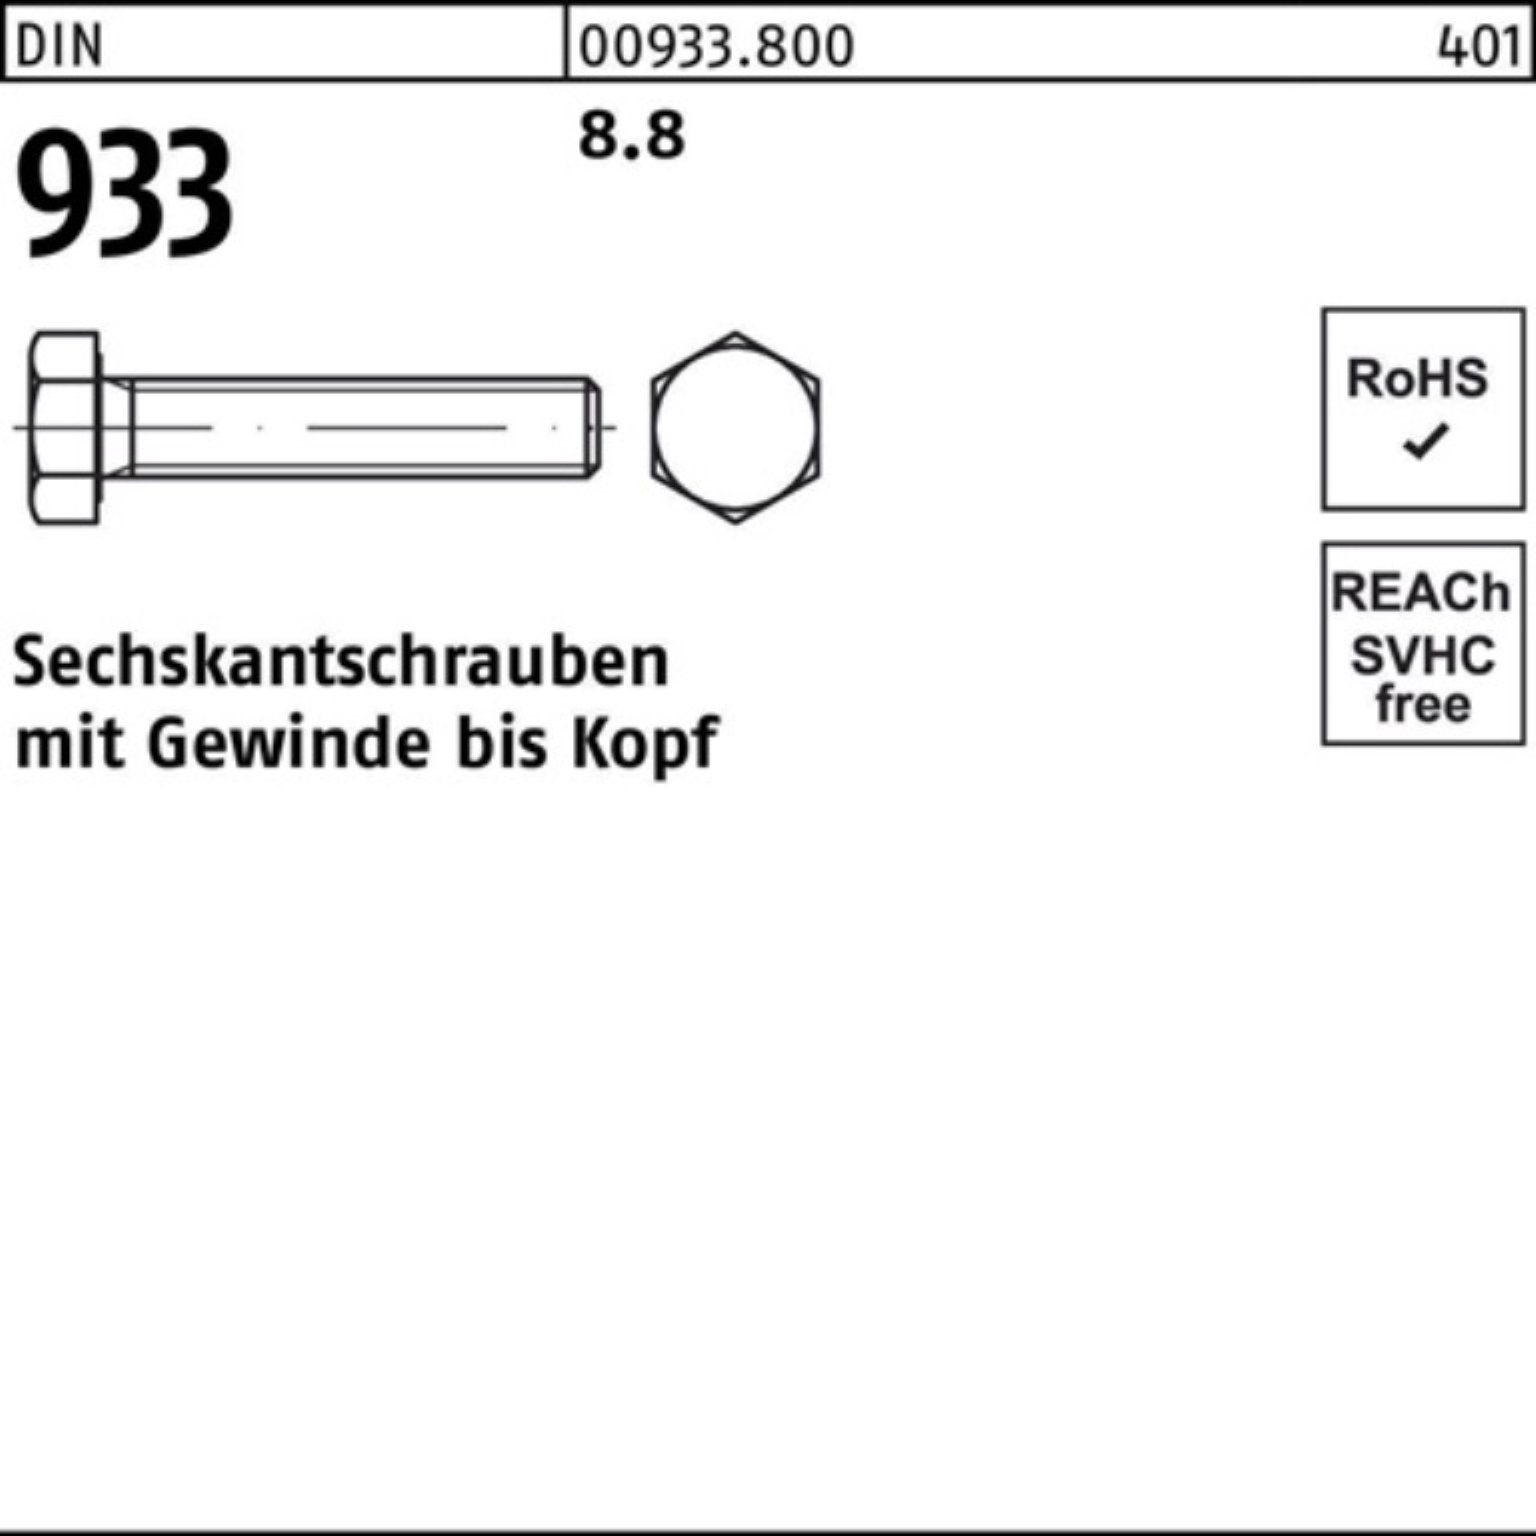 Sechskantschraube 200er DIN Stück 100 M5x Sechskantschraube 200 Reyher DIN VG 933 Pack 8.8 933